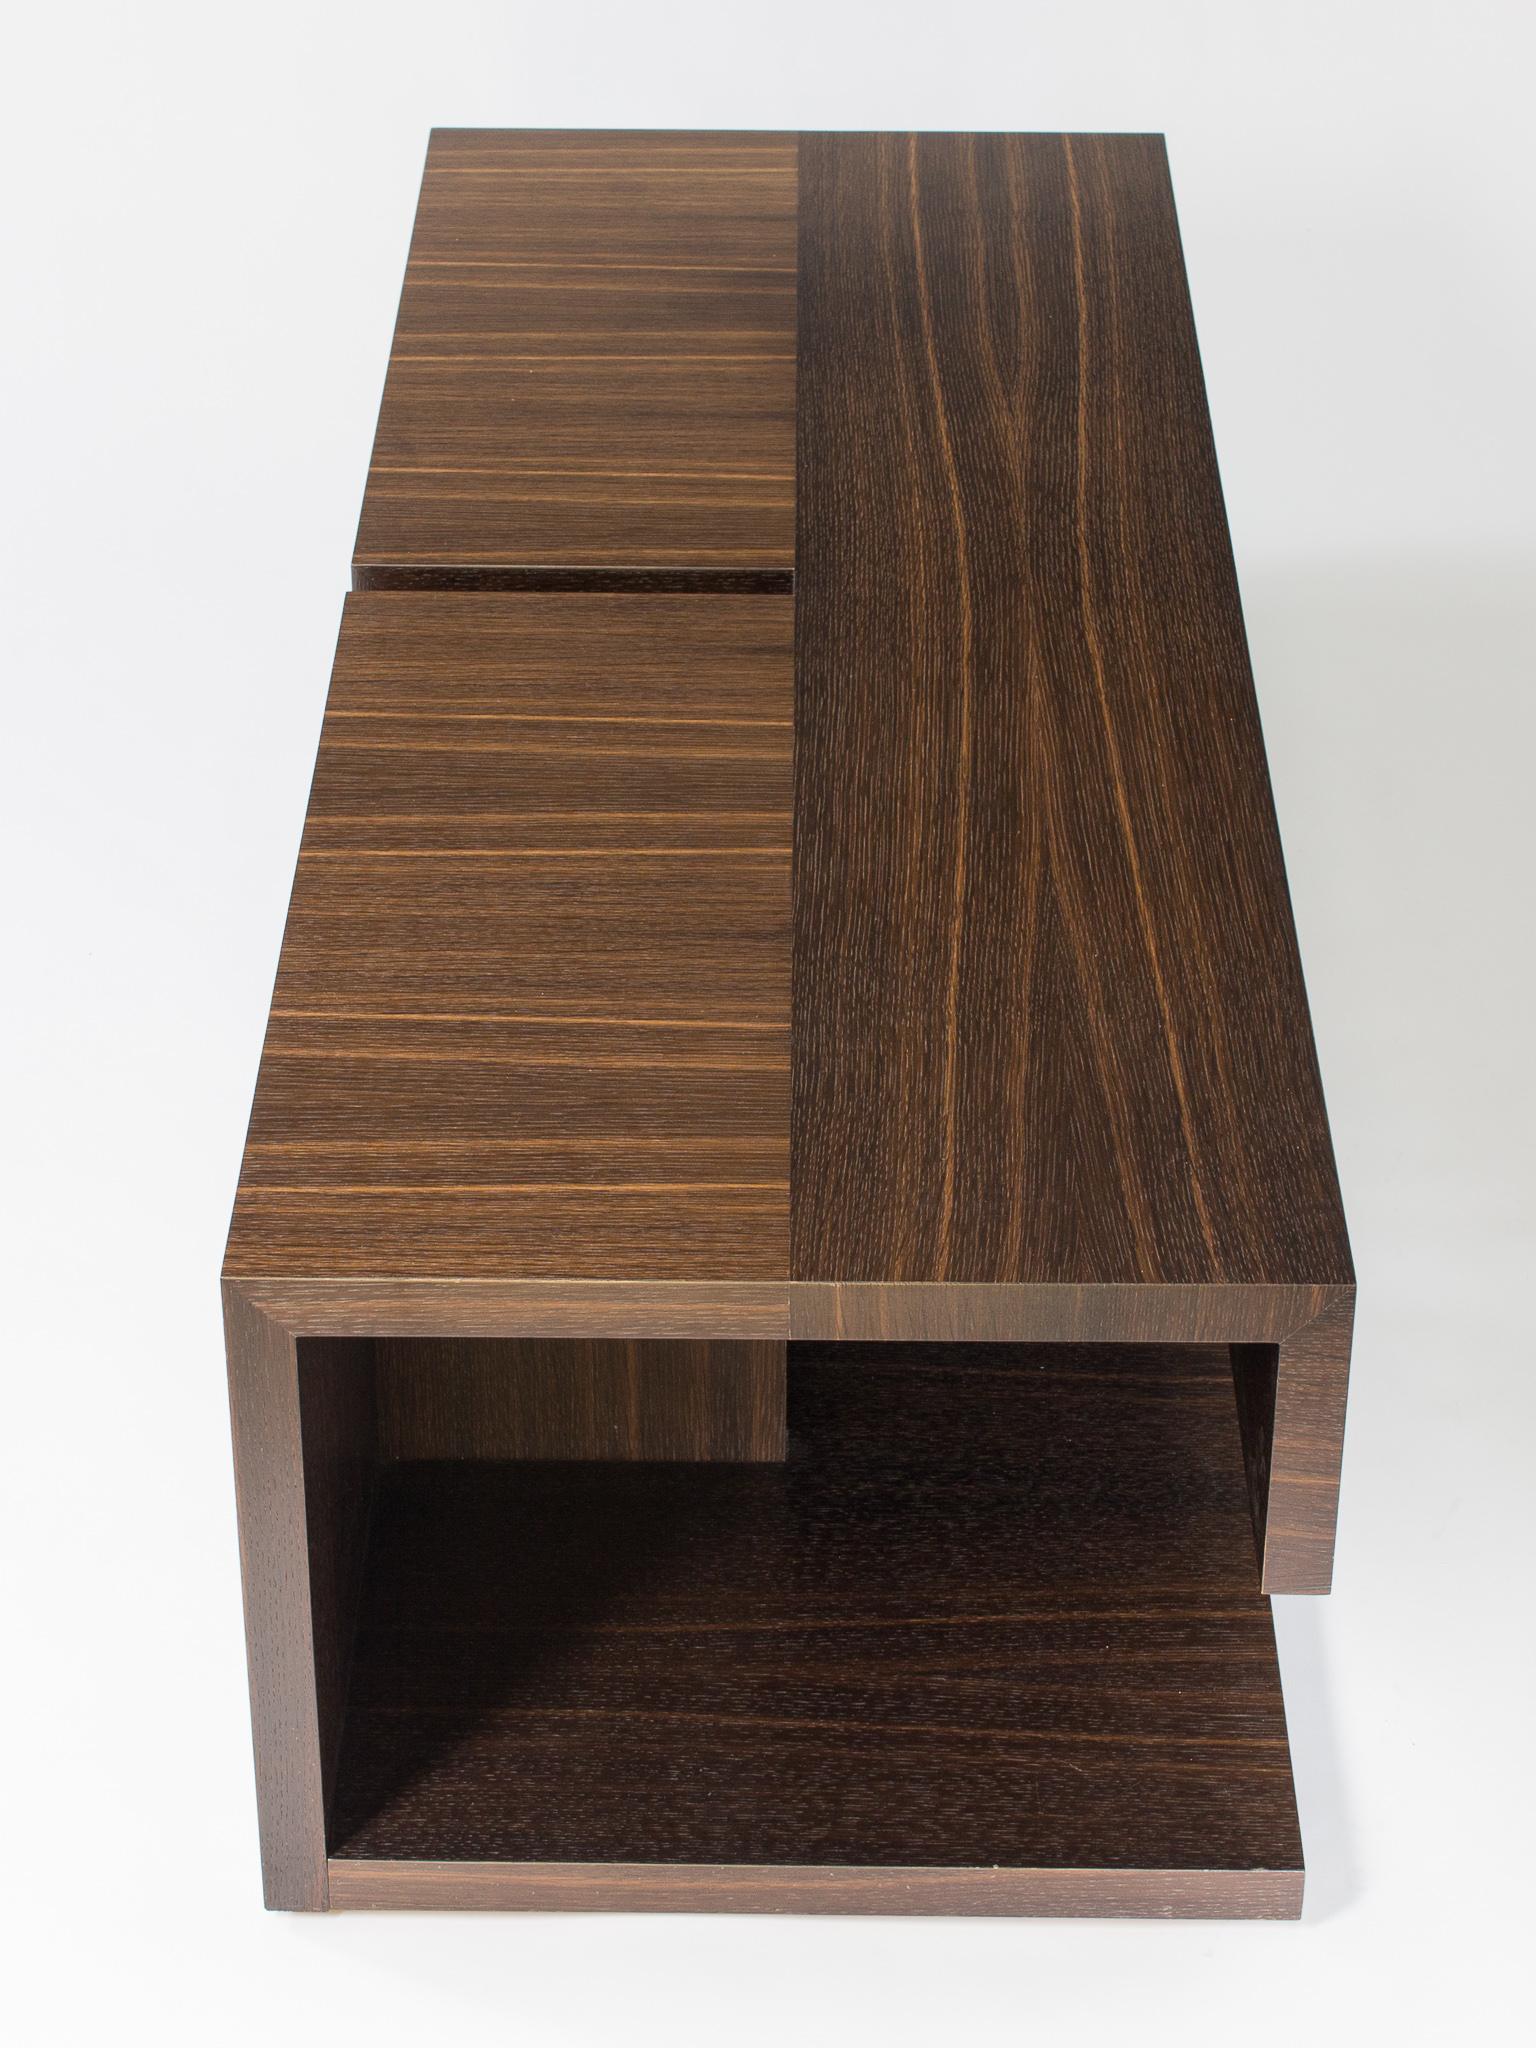 Cette version de notre table basse moderne en bois s'appelle la table 